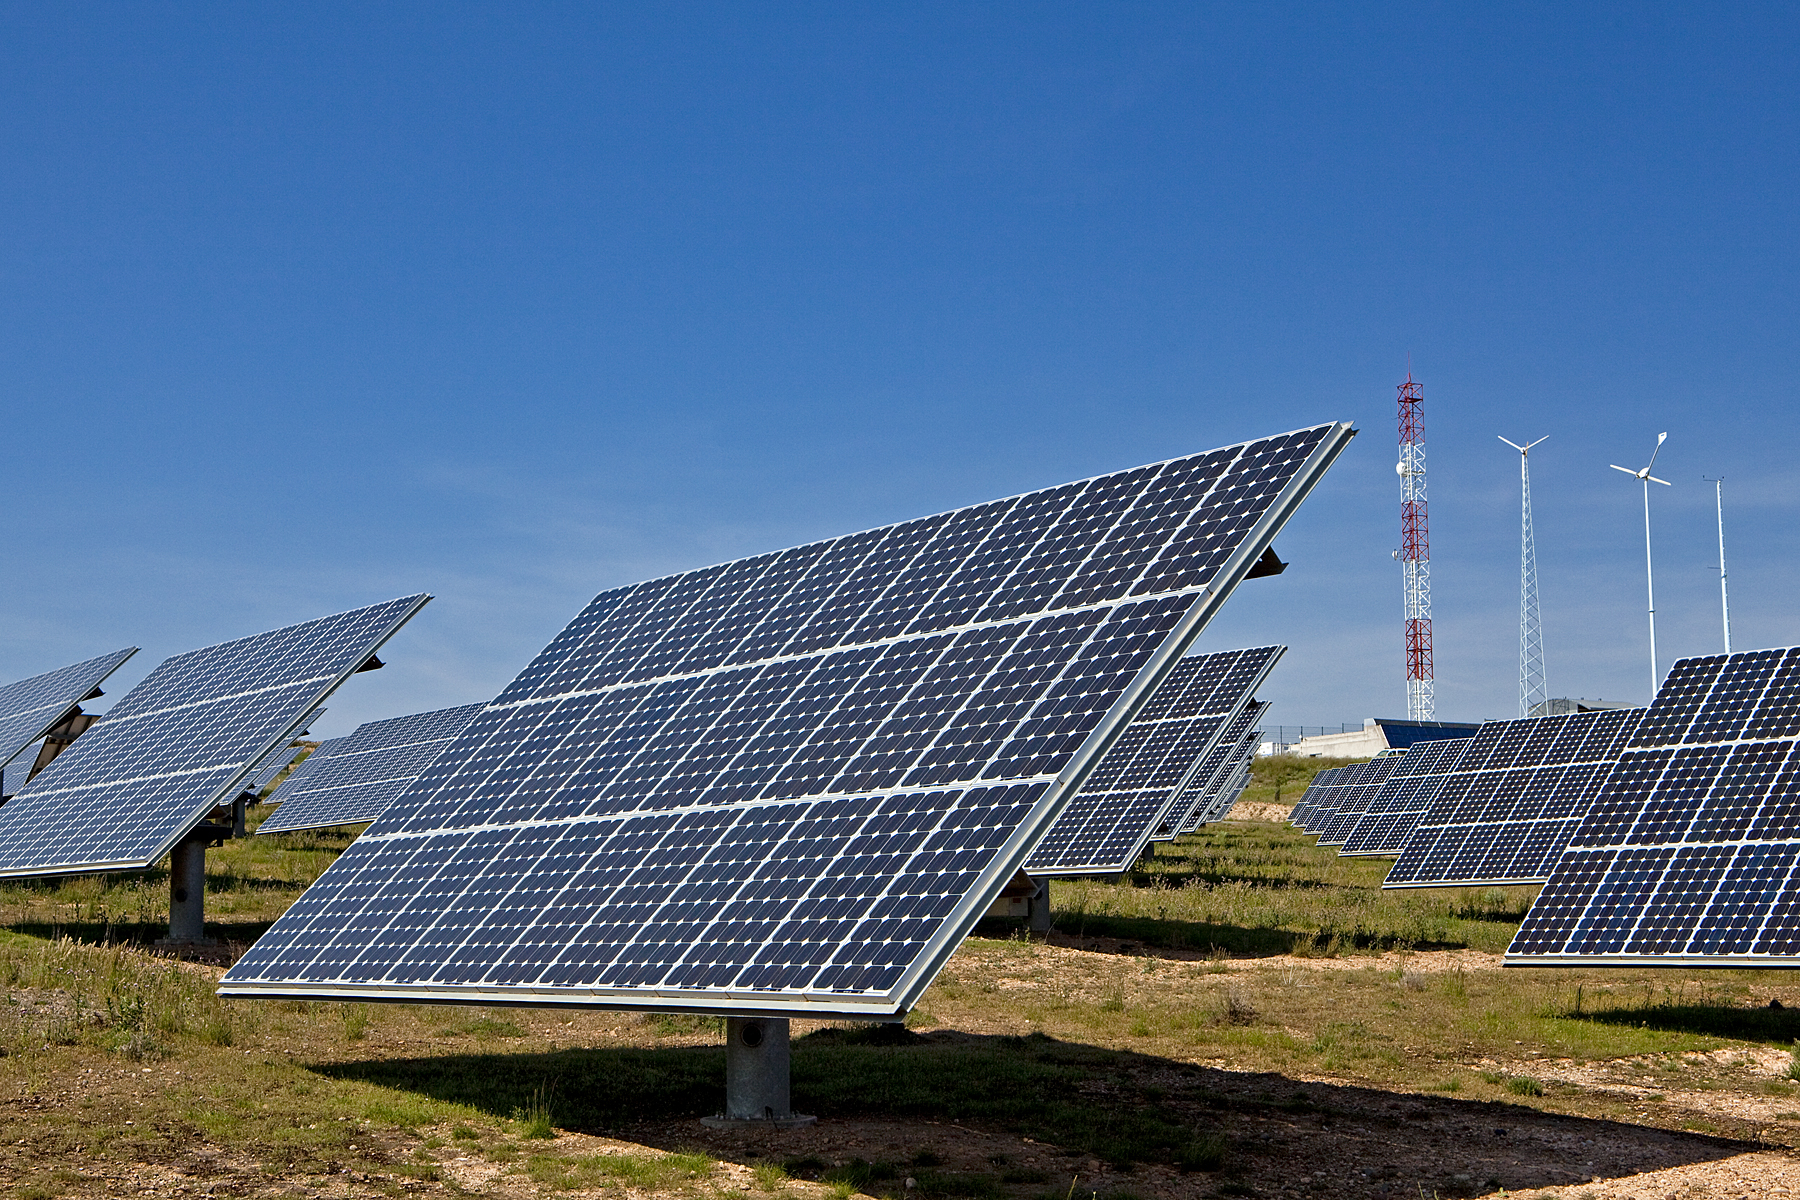 Coordinador Eléctrico Nacional: participación de energía renovable llegaría al 30% a fin de año